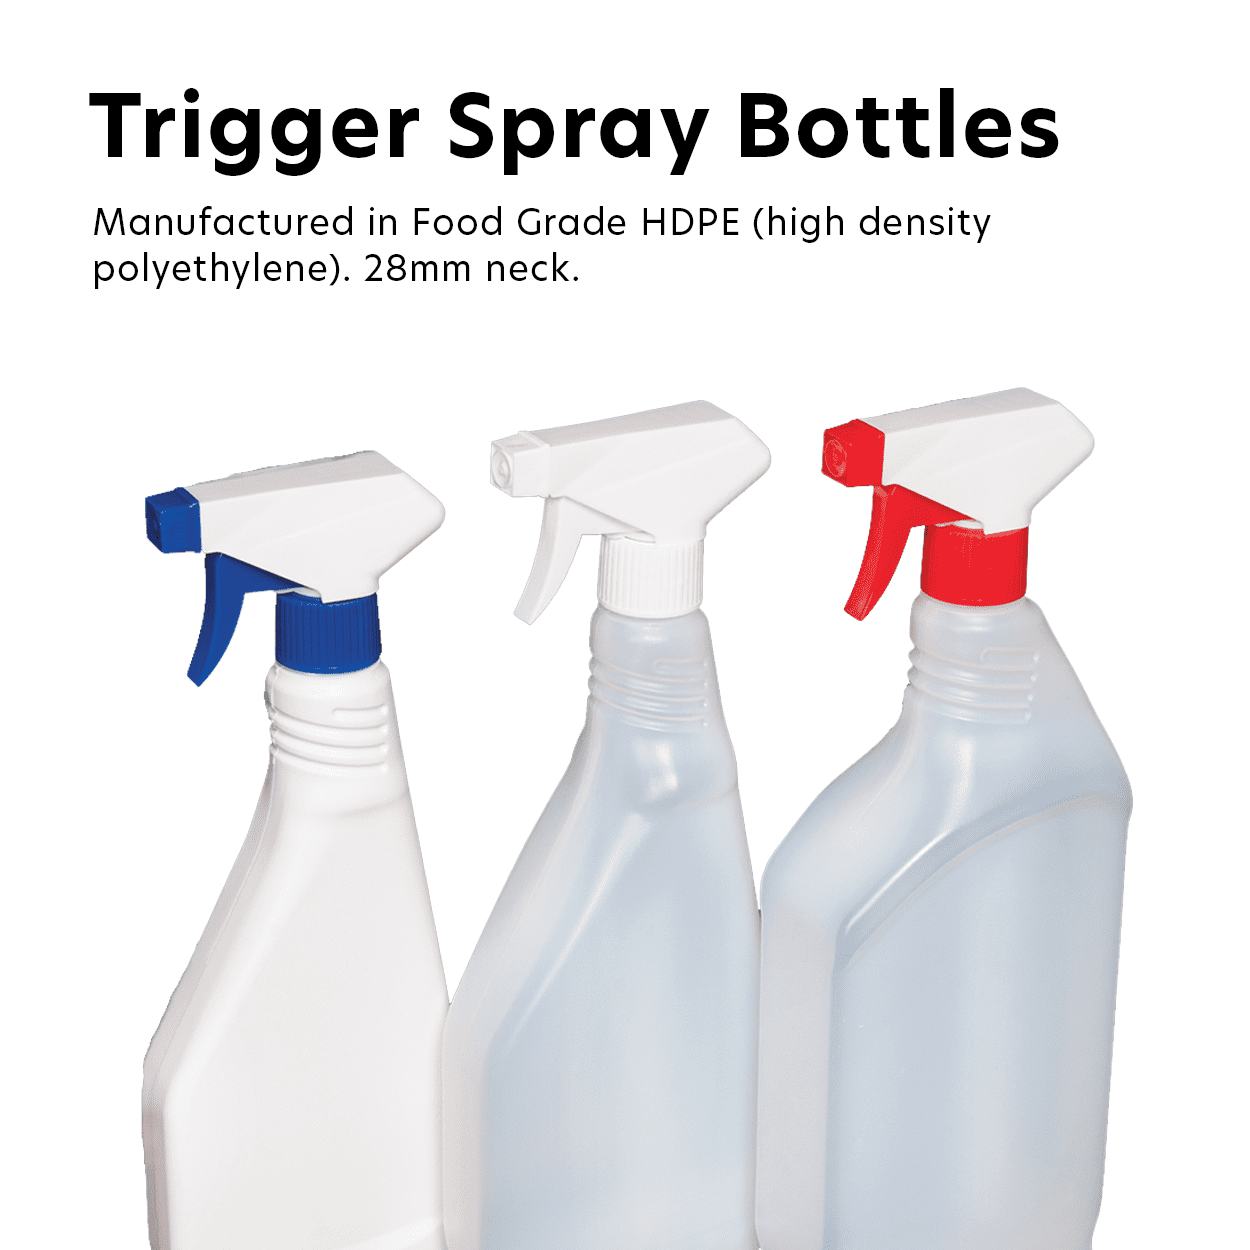 Trigger Spray Bottles